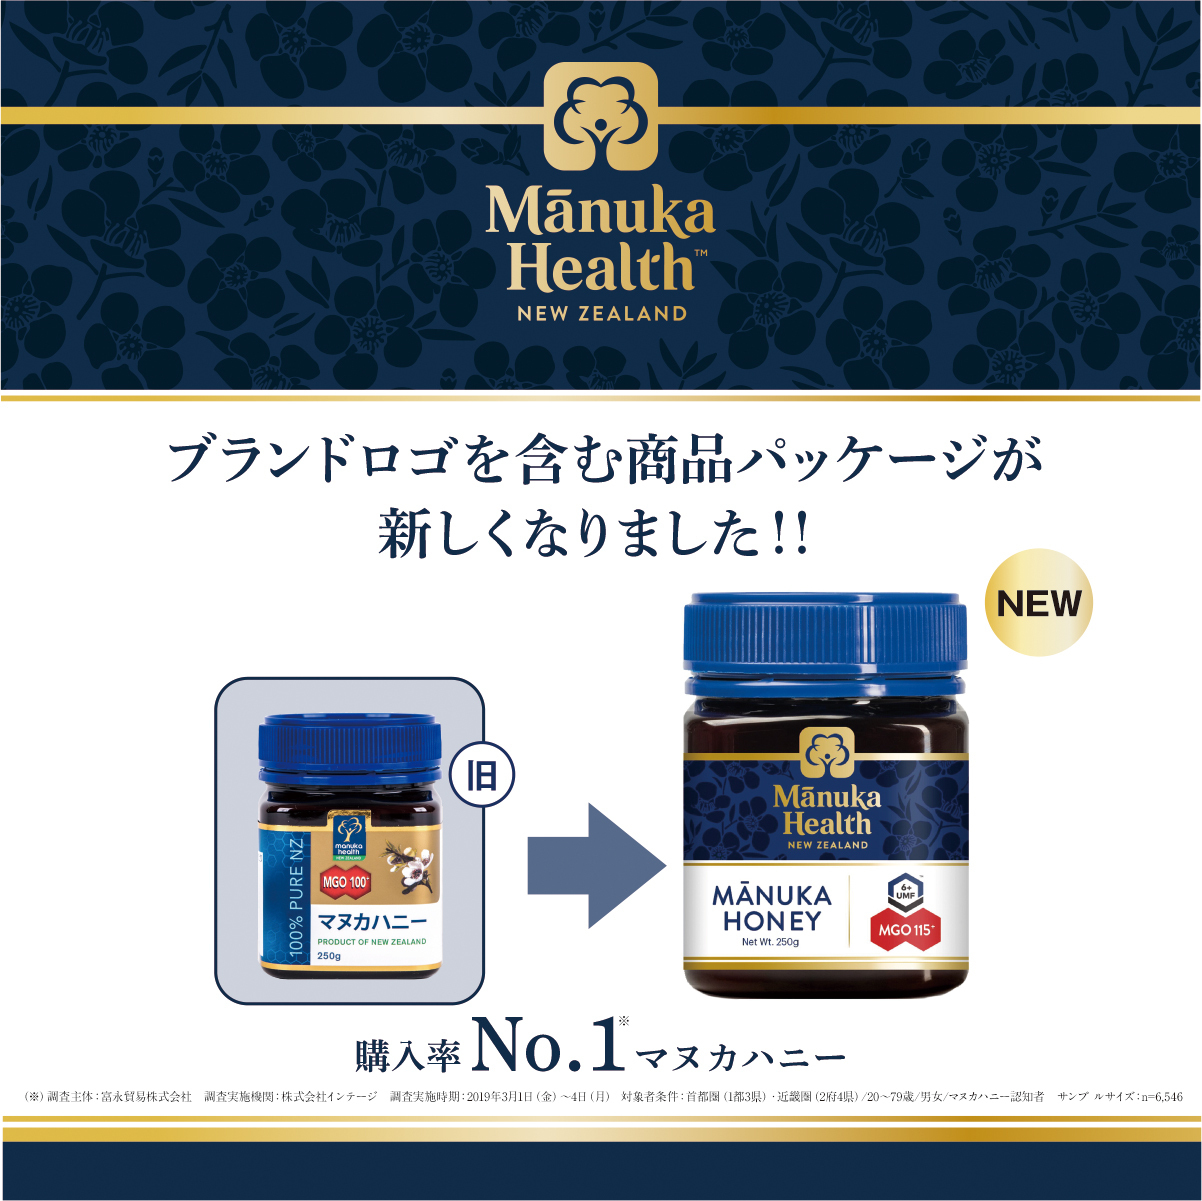 マヌカハニー日本国内no 1ブランド マヌカヘルス 2019年夏 デザインを一新し新価格で7 16に販売スタート 富永貿易株式会社のプレスリリース